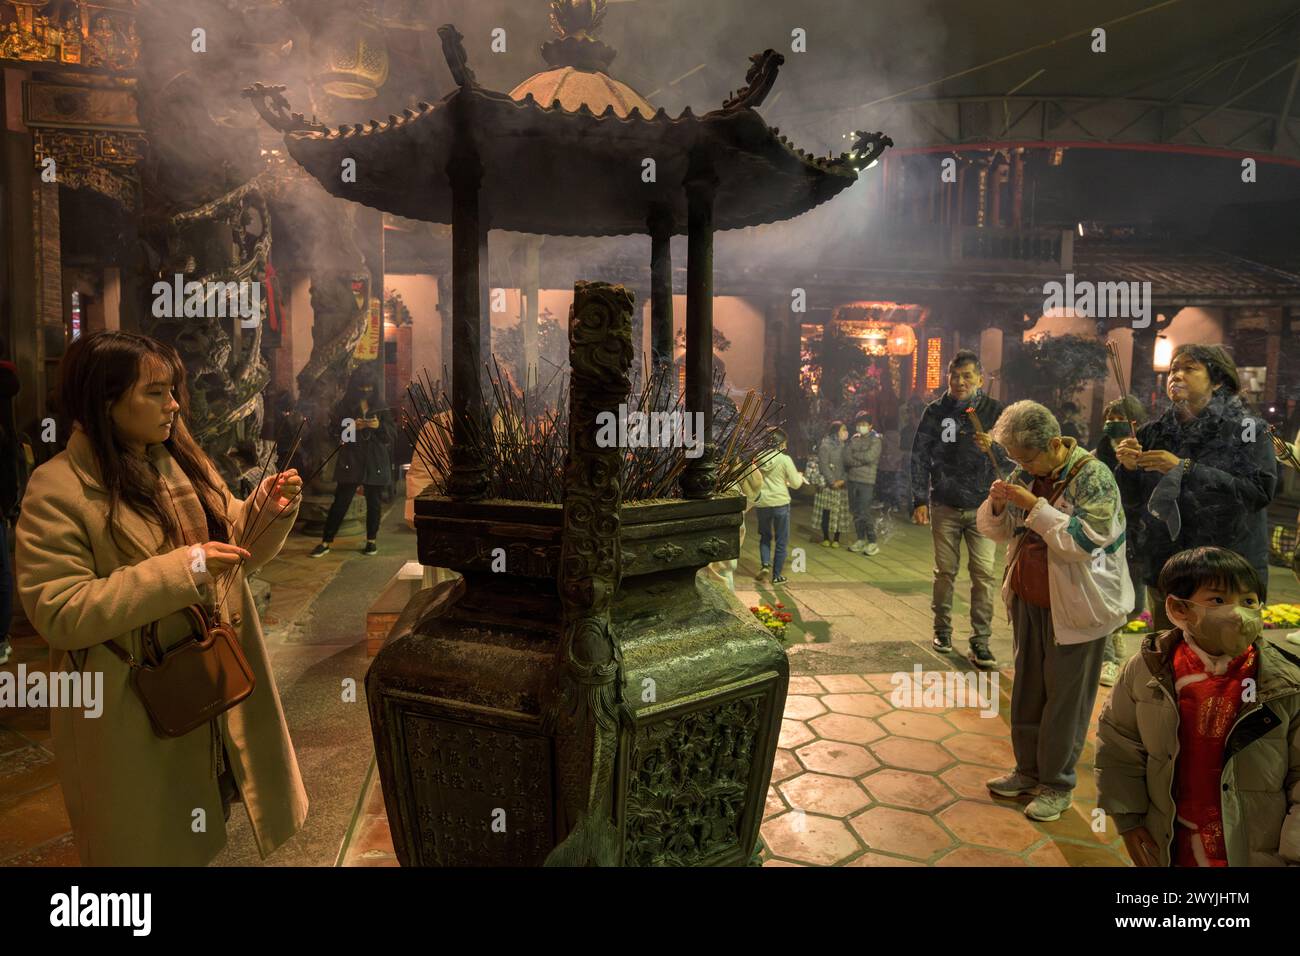 Gläubige beten im Baoan-Tempel, gefüllt mit Räucherrauch, während einer chinesischen Neujahrszeremonie Stockfoto